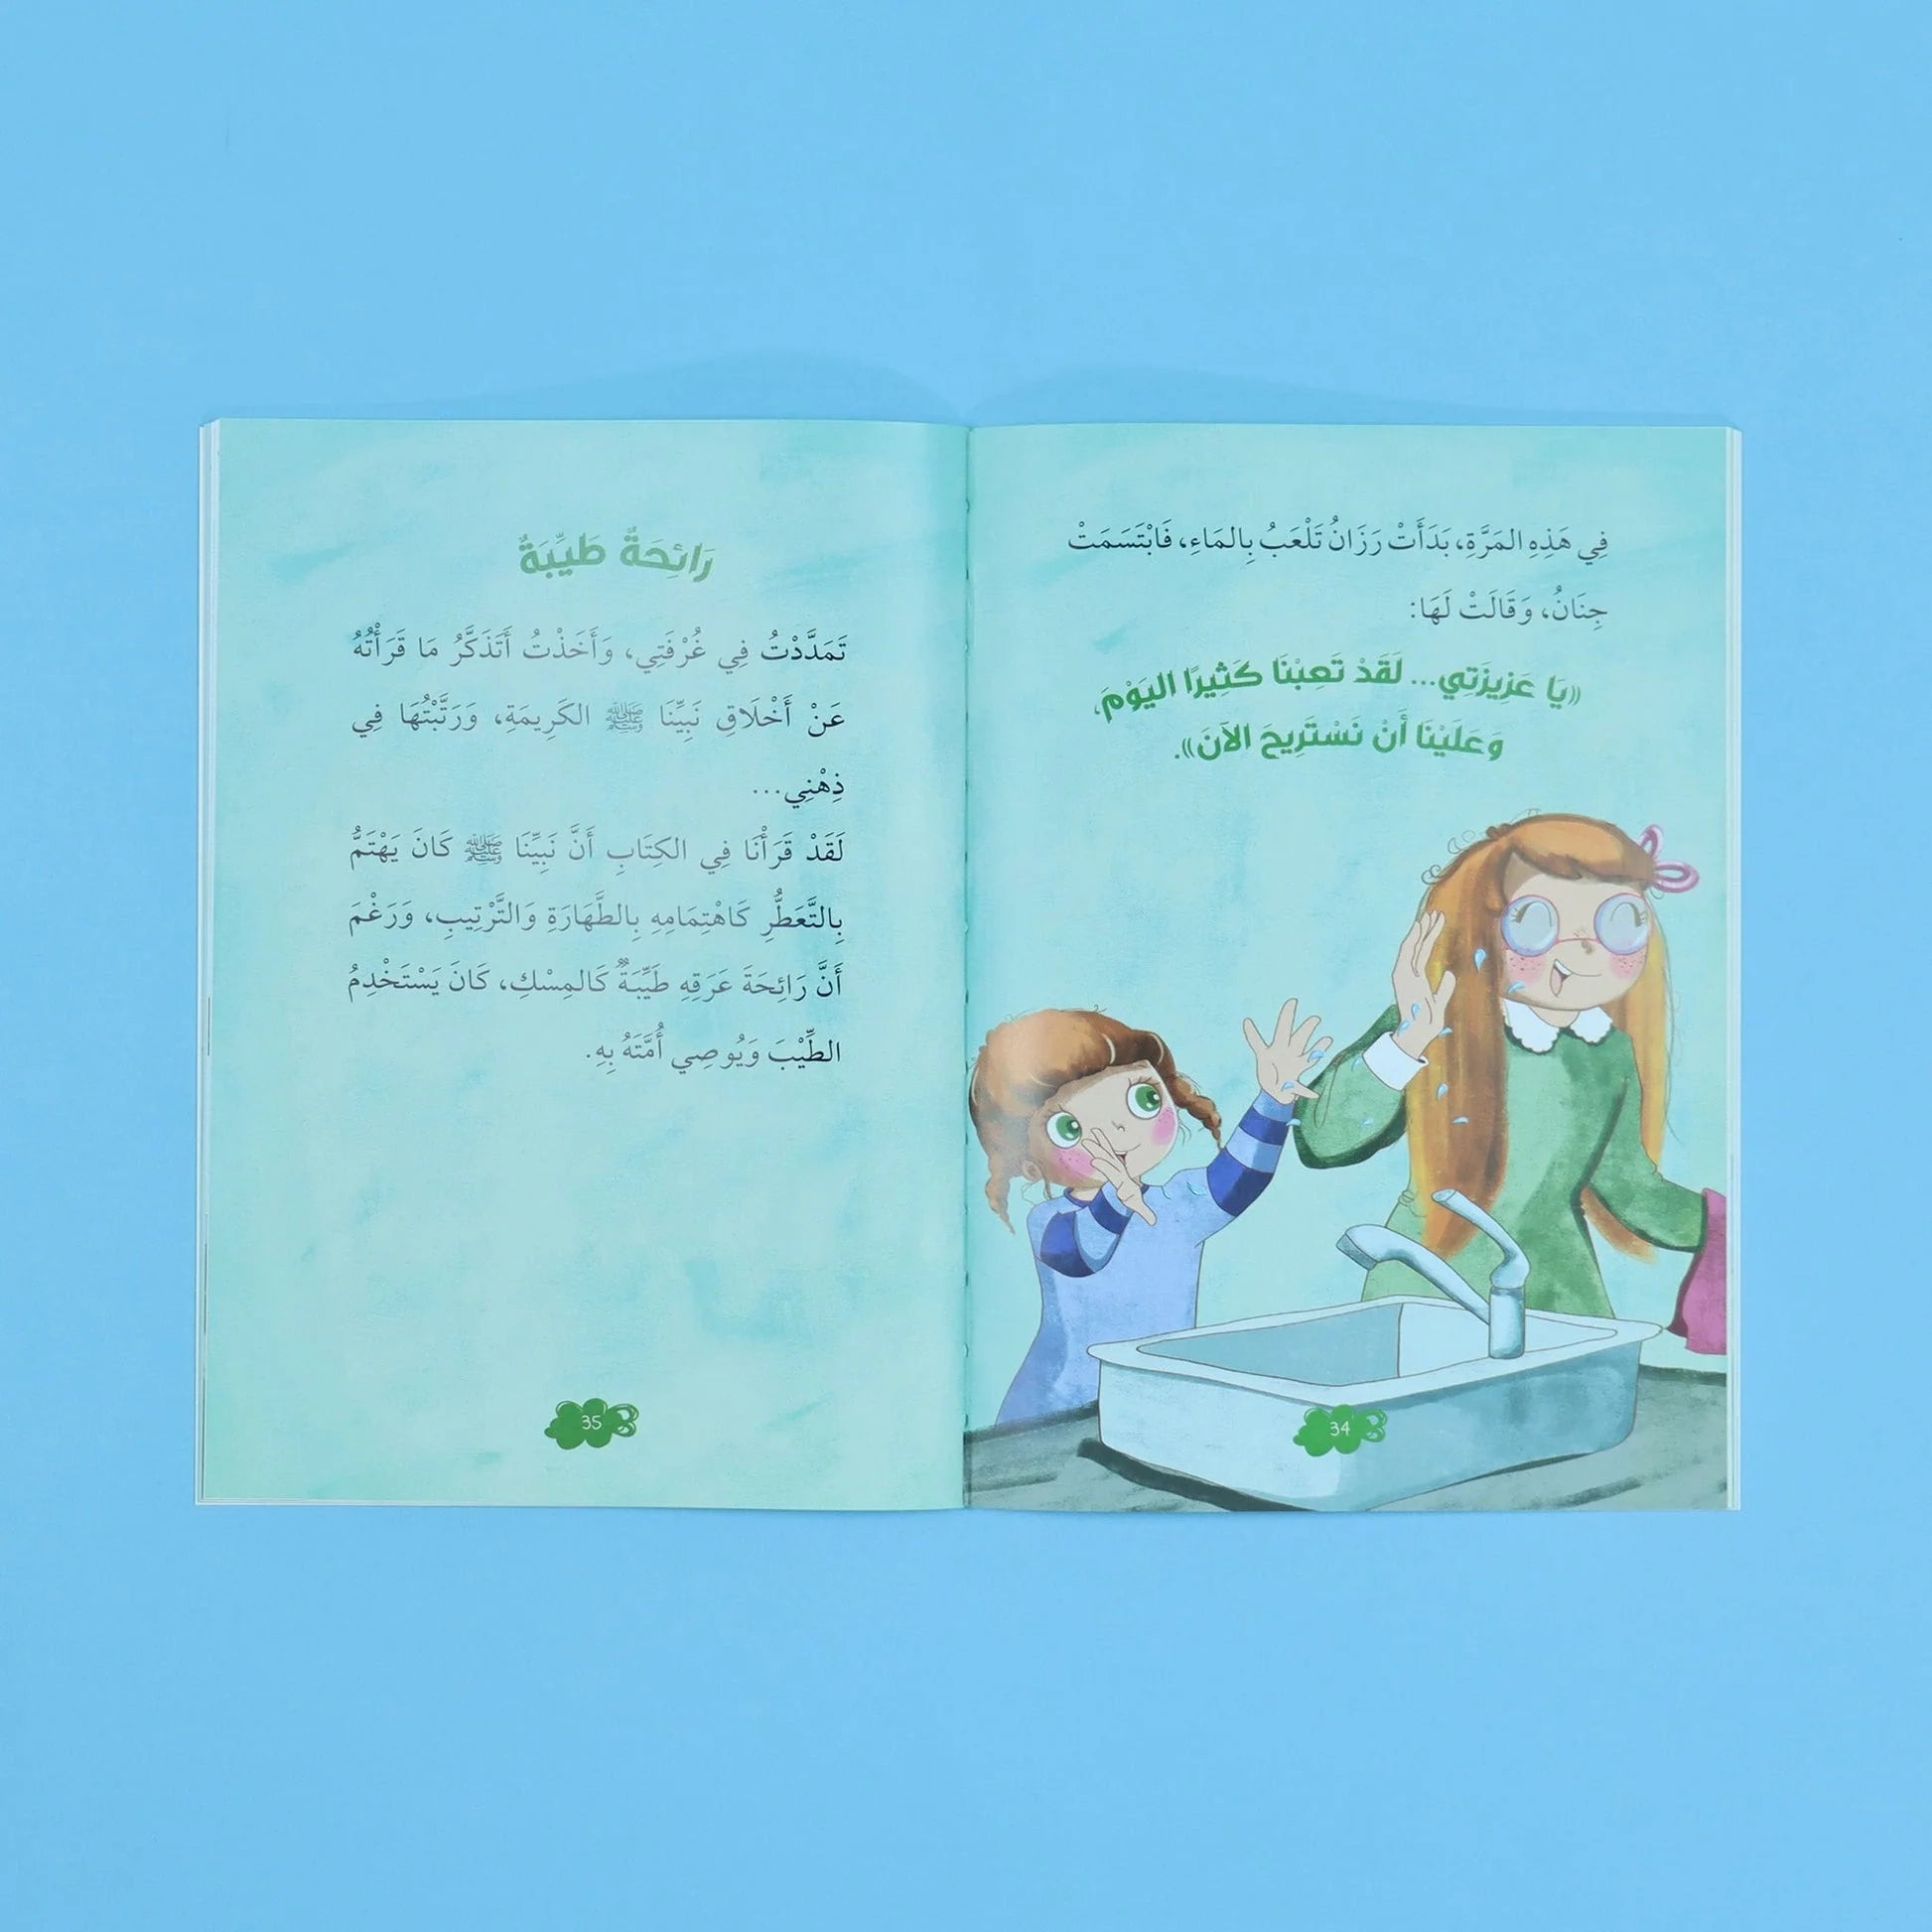 سلسلة القراءة المثمرة - قصص مع جاد وجنان - نبينا الكريم - 5 قصص